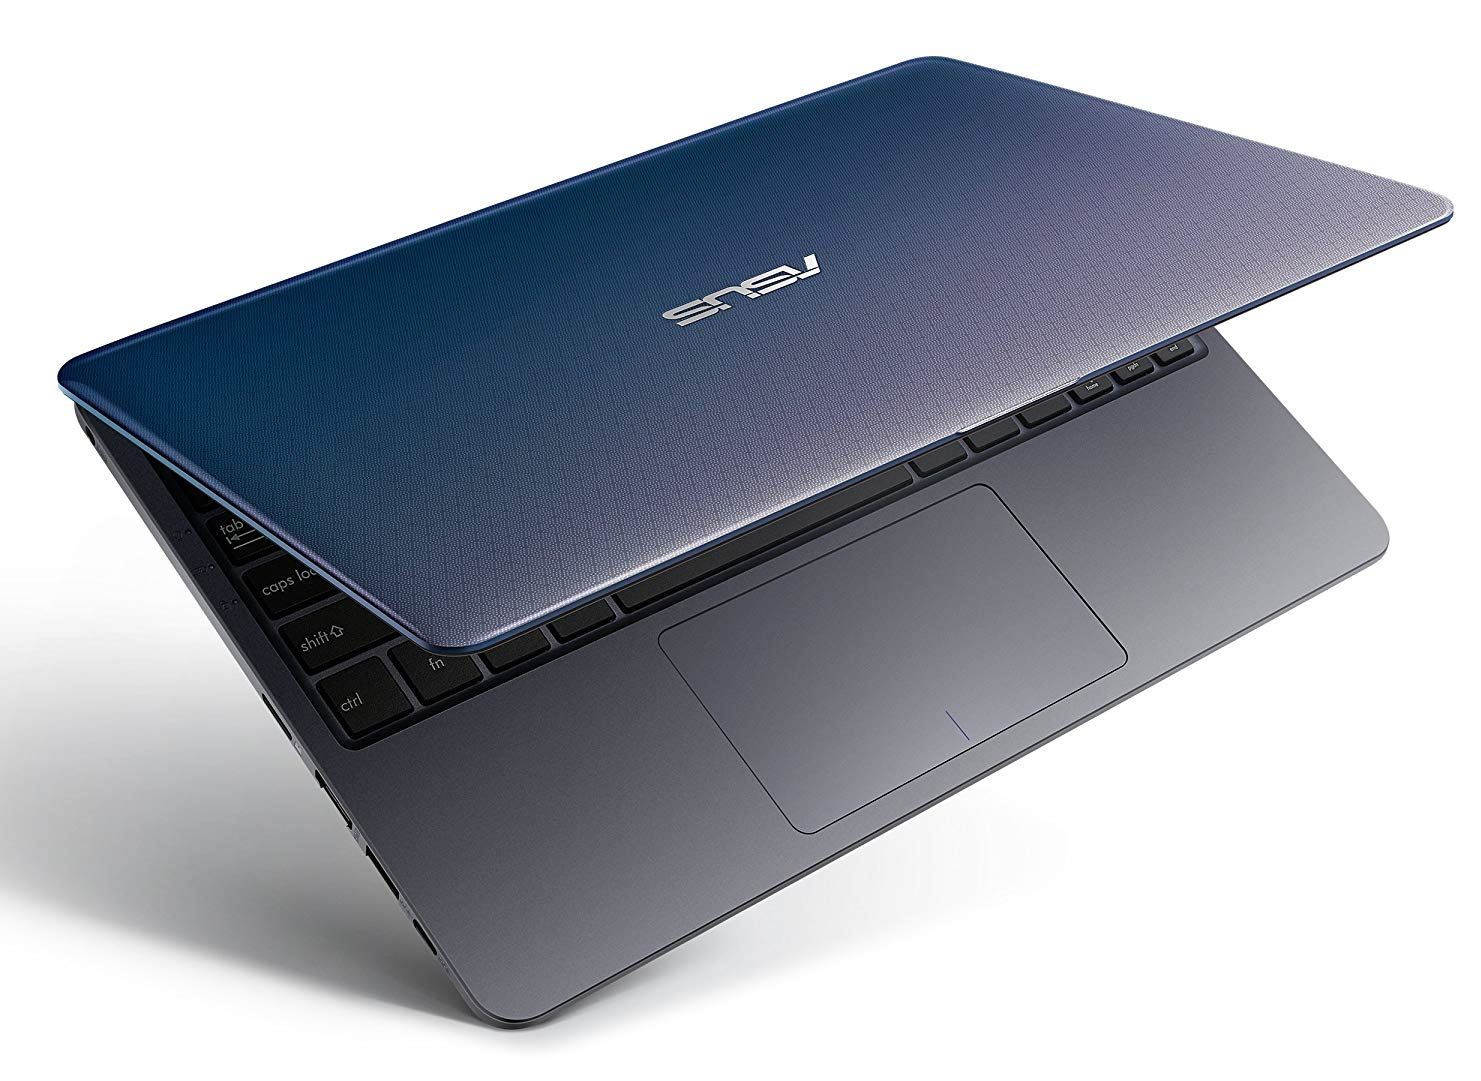 Asus Vivobook L203ma Ds04 Affordable Mini Laptop Laptop